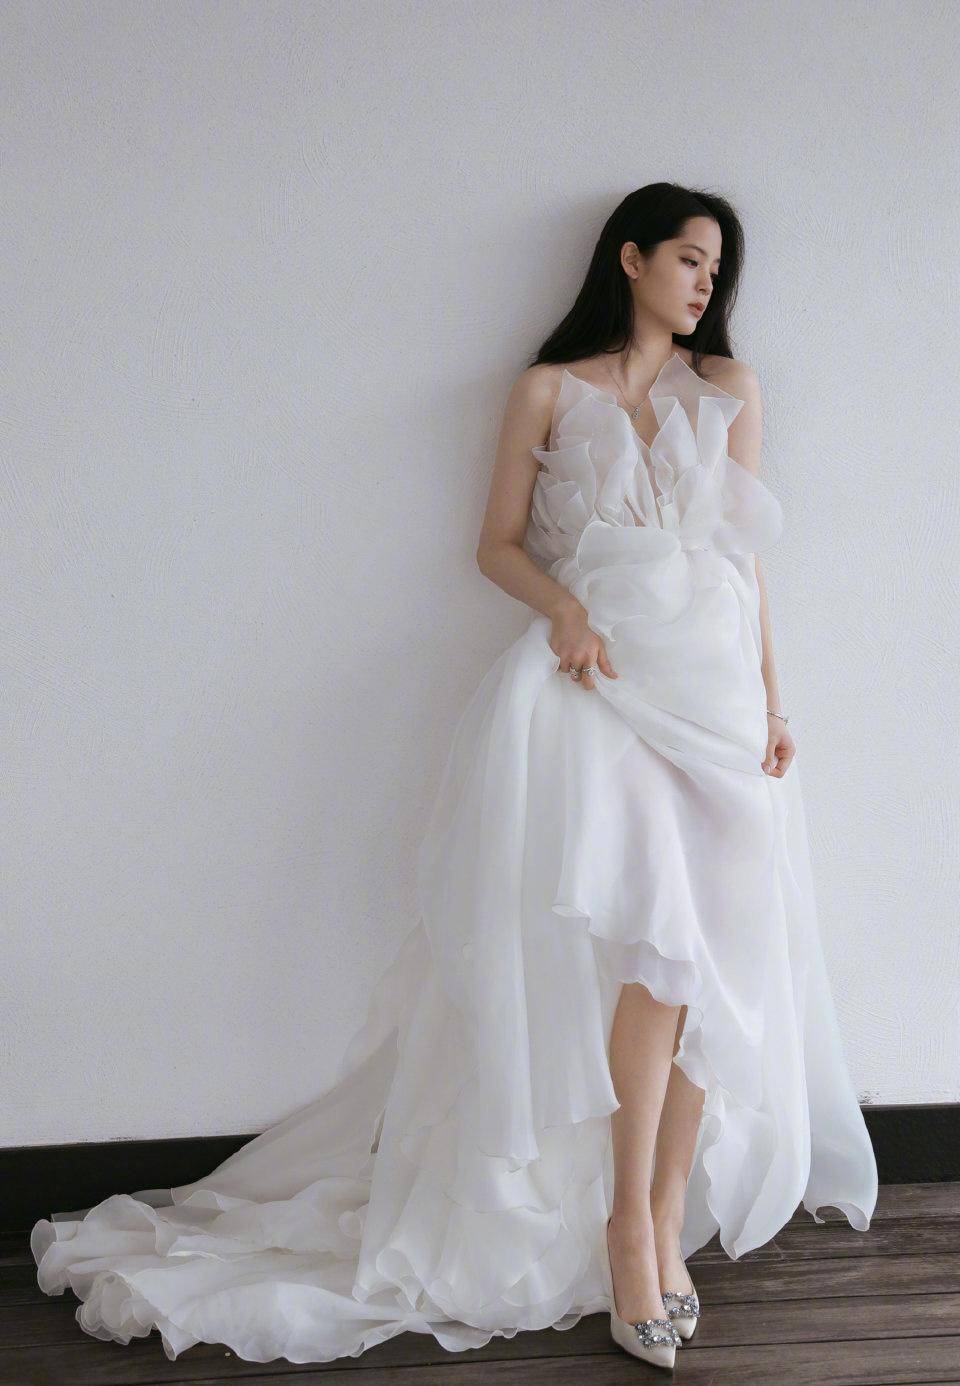 欧阳娜娜米白色网纱礼服出席活动,抹胸设计超显身材,表现力吸睛